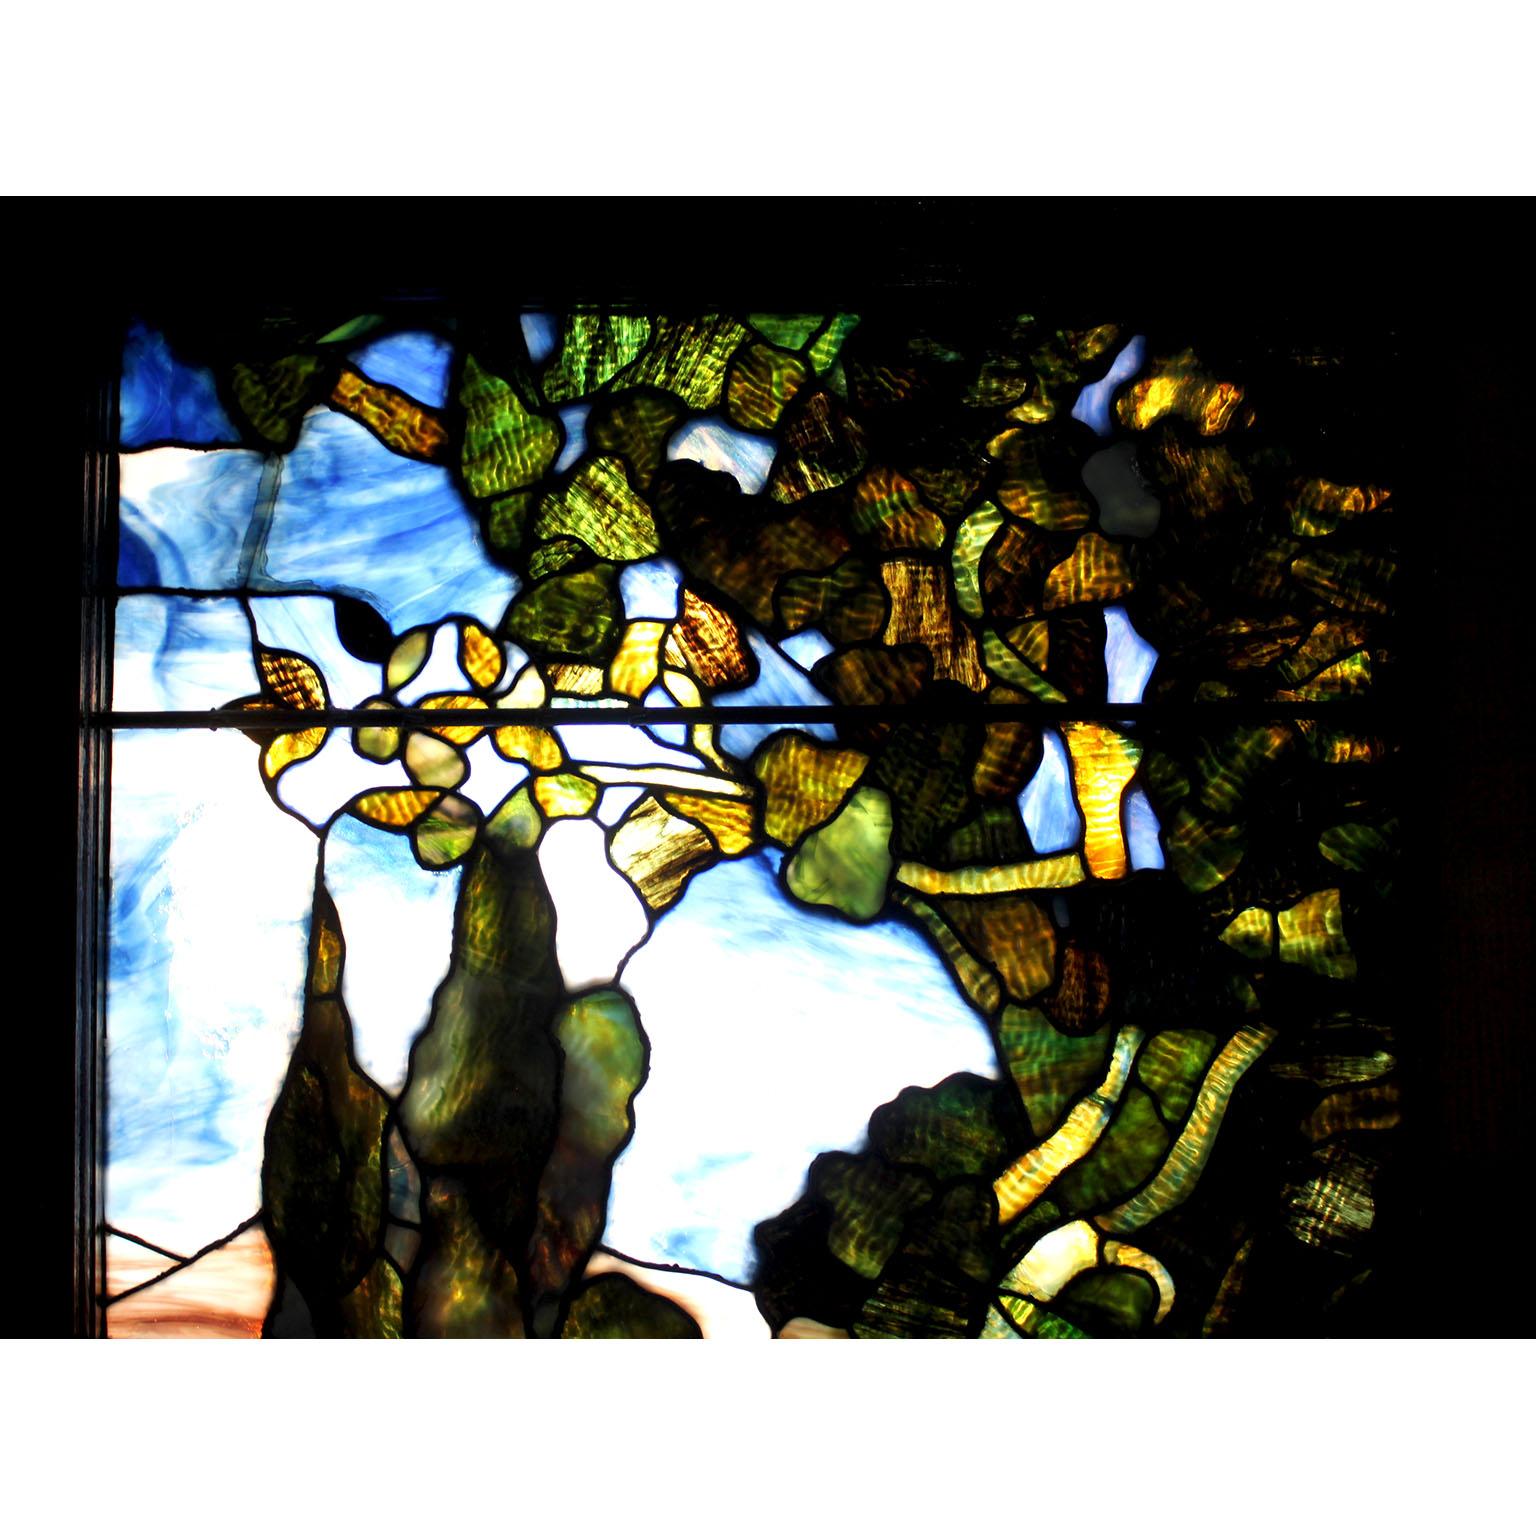 Panneau de vitrail américain du XIXe siècle représentant des moutons et des agneaux parmi des fleurs et des arbustes, à la manière de Louis Comfort Tiffany - Tiffany Studios, dans un cadre en chêne. En bas, on peut lire 